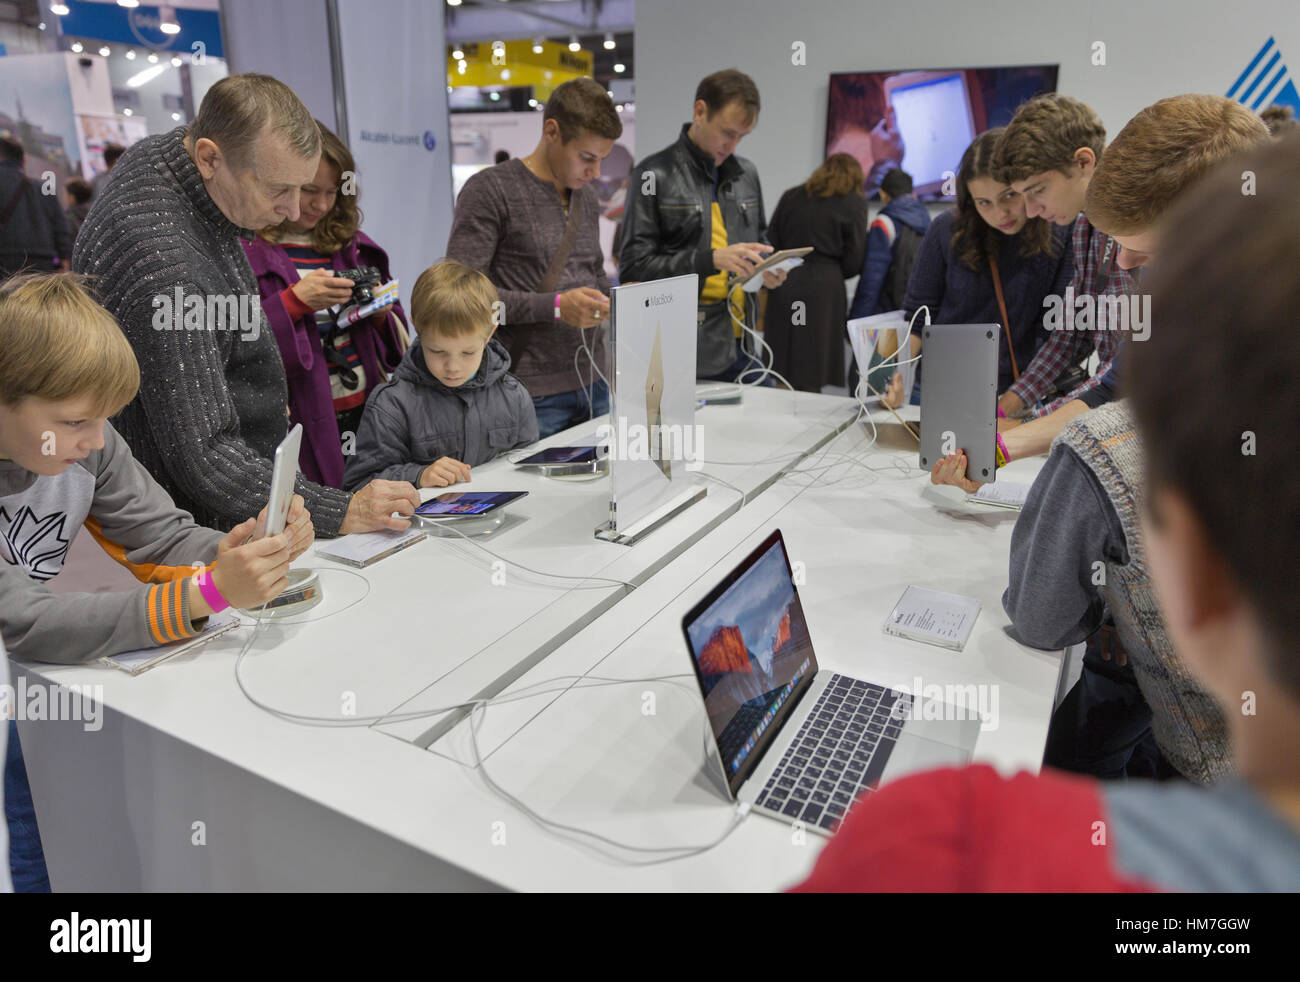 KIEV, UCRAINA - 11 ottobre 2015: la gente visita Apple, una multinazionale americana tecnologia azienda stand durante la CEE 2015, il più grande electronics trad Foto Stock